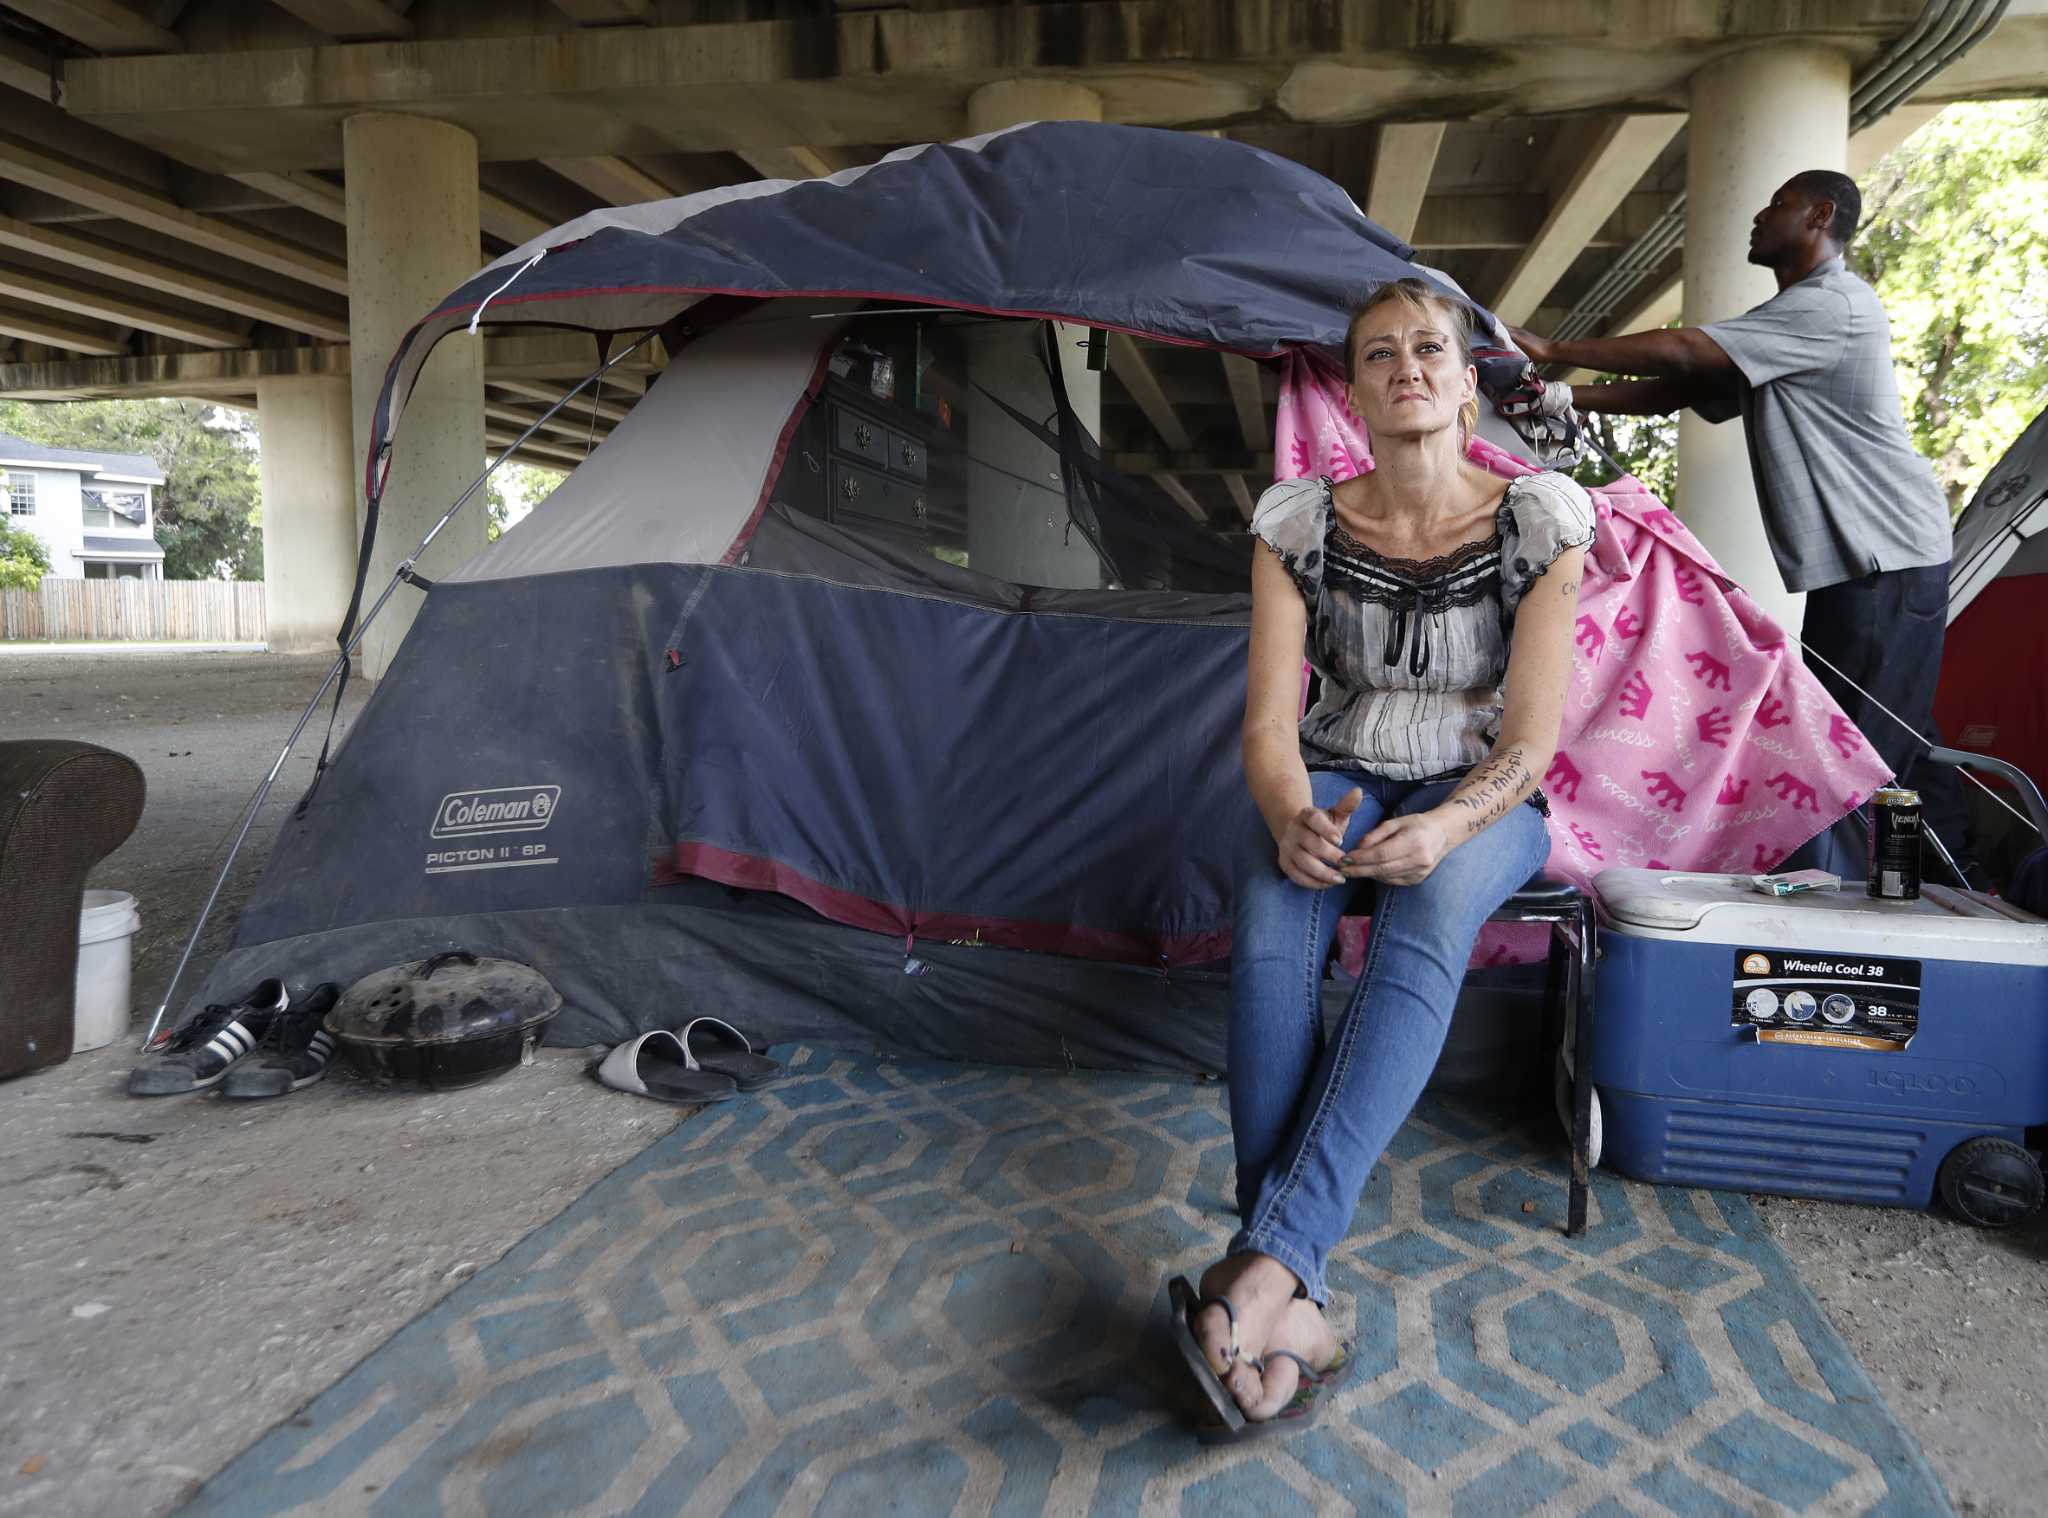 Plan for homeless shelter in part of Metro depot advances - Houston Chronicle